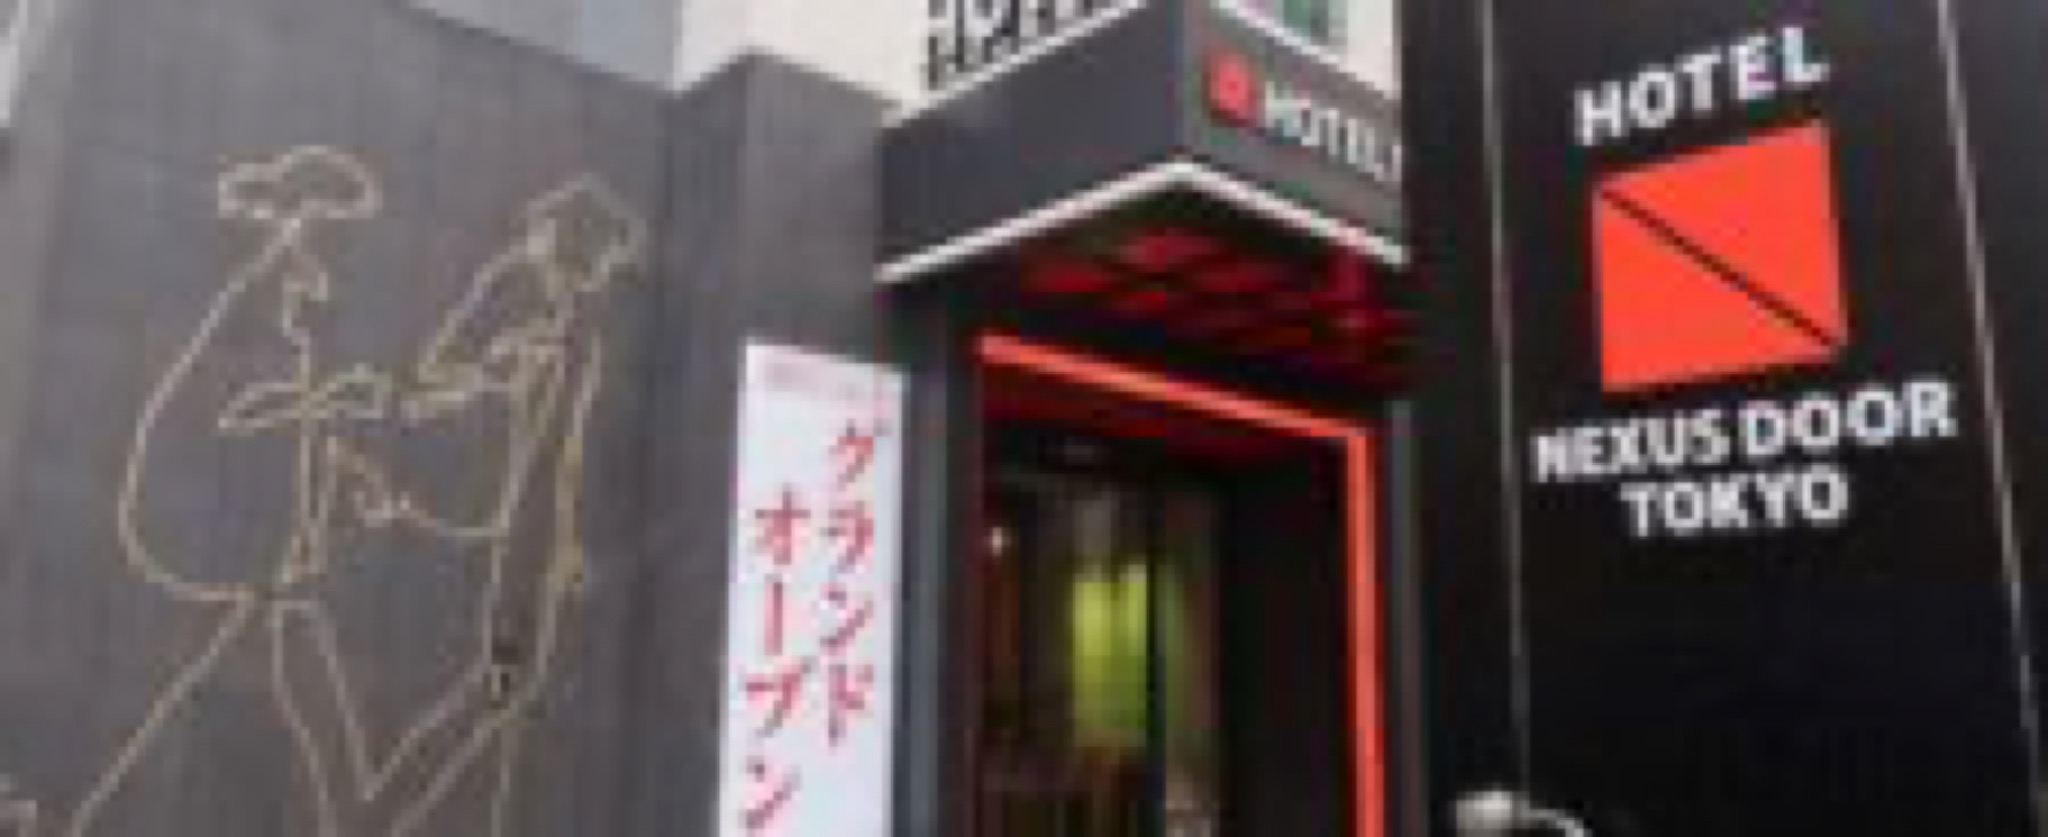 hotel nexus door tokyo